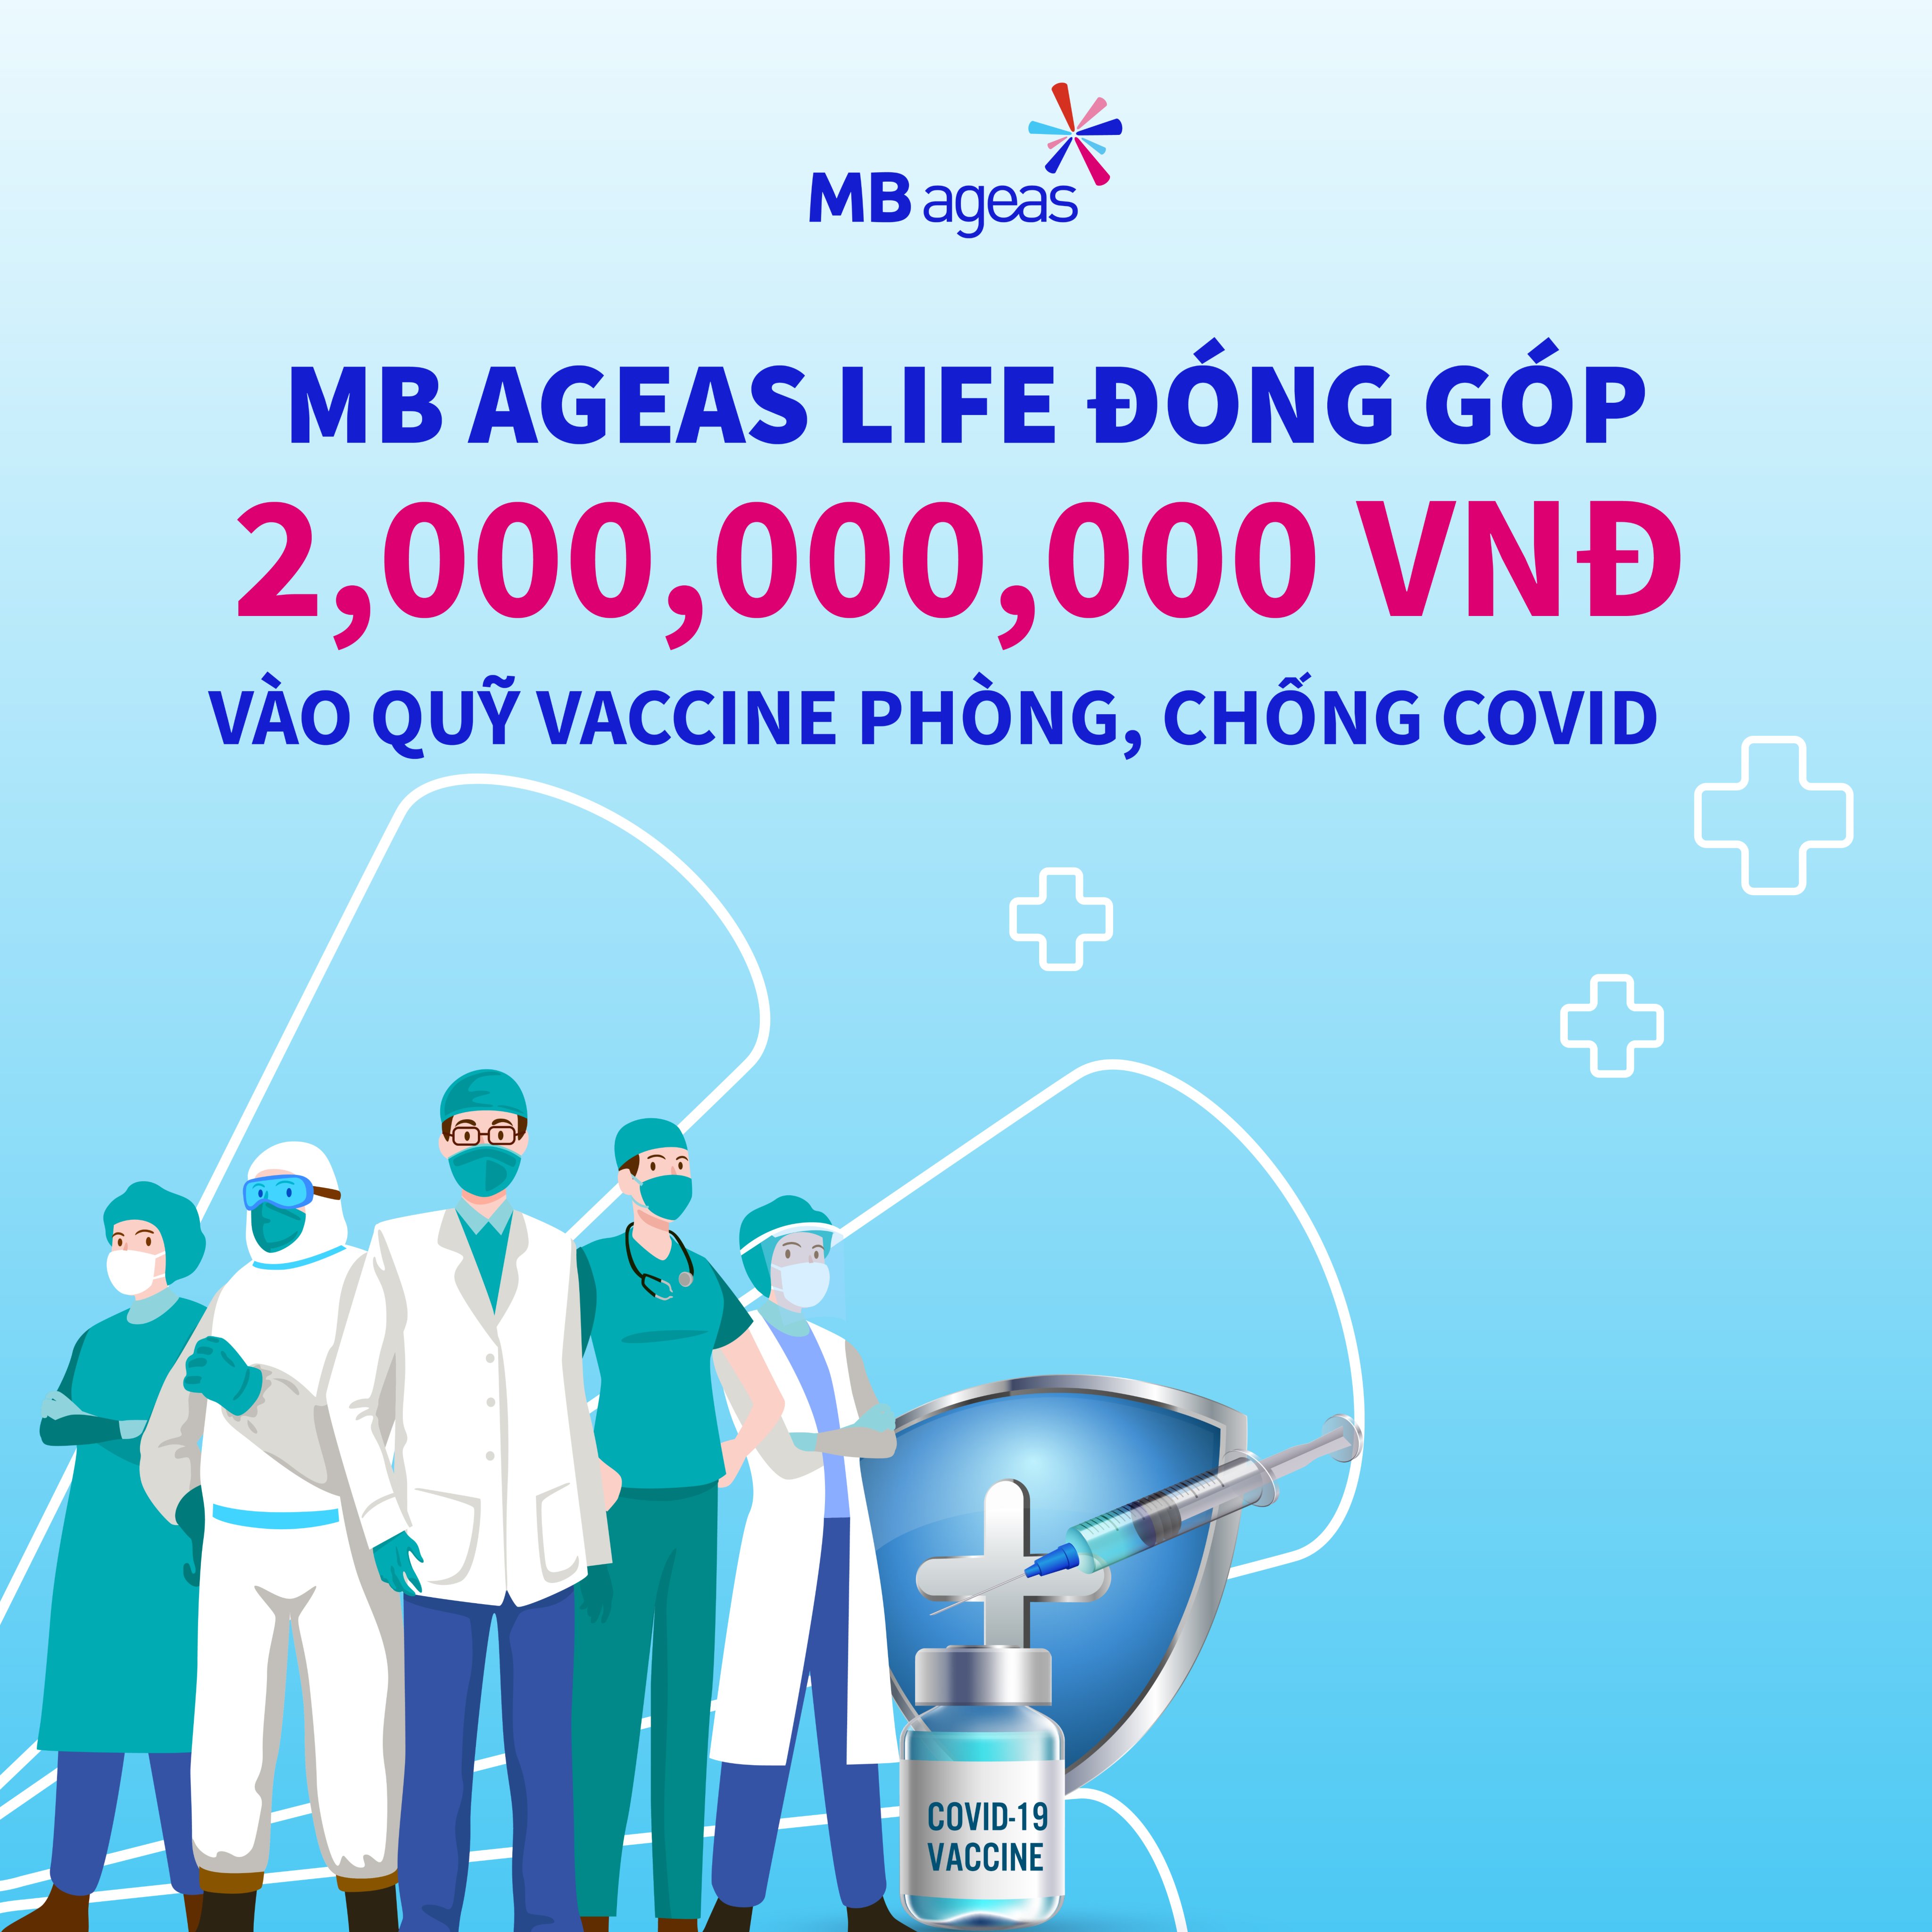 MB Ageas Life ủng hộ 2 tỷ đồng cho Quỹ vắc xin phòng, chống Covid-19.